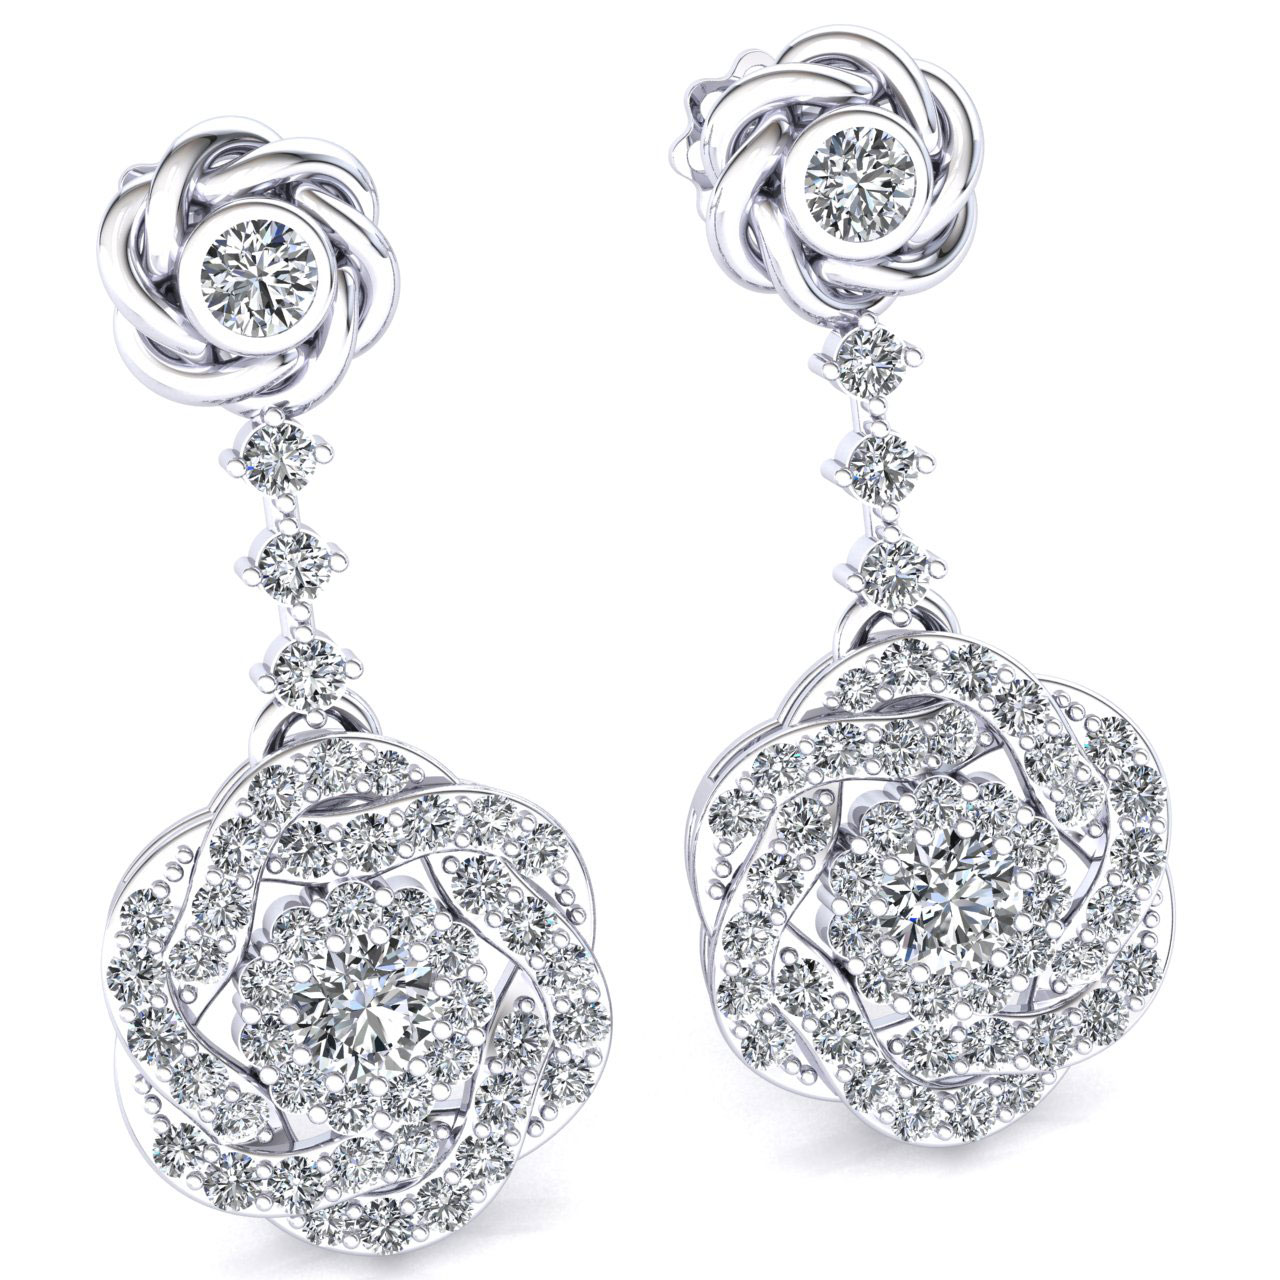 Ebay diamond drop earrings